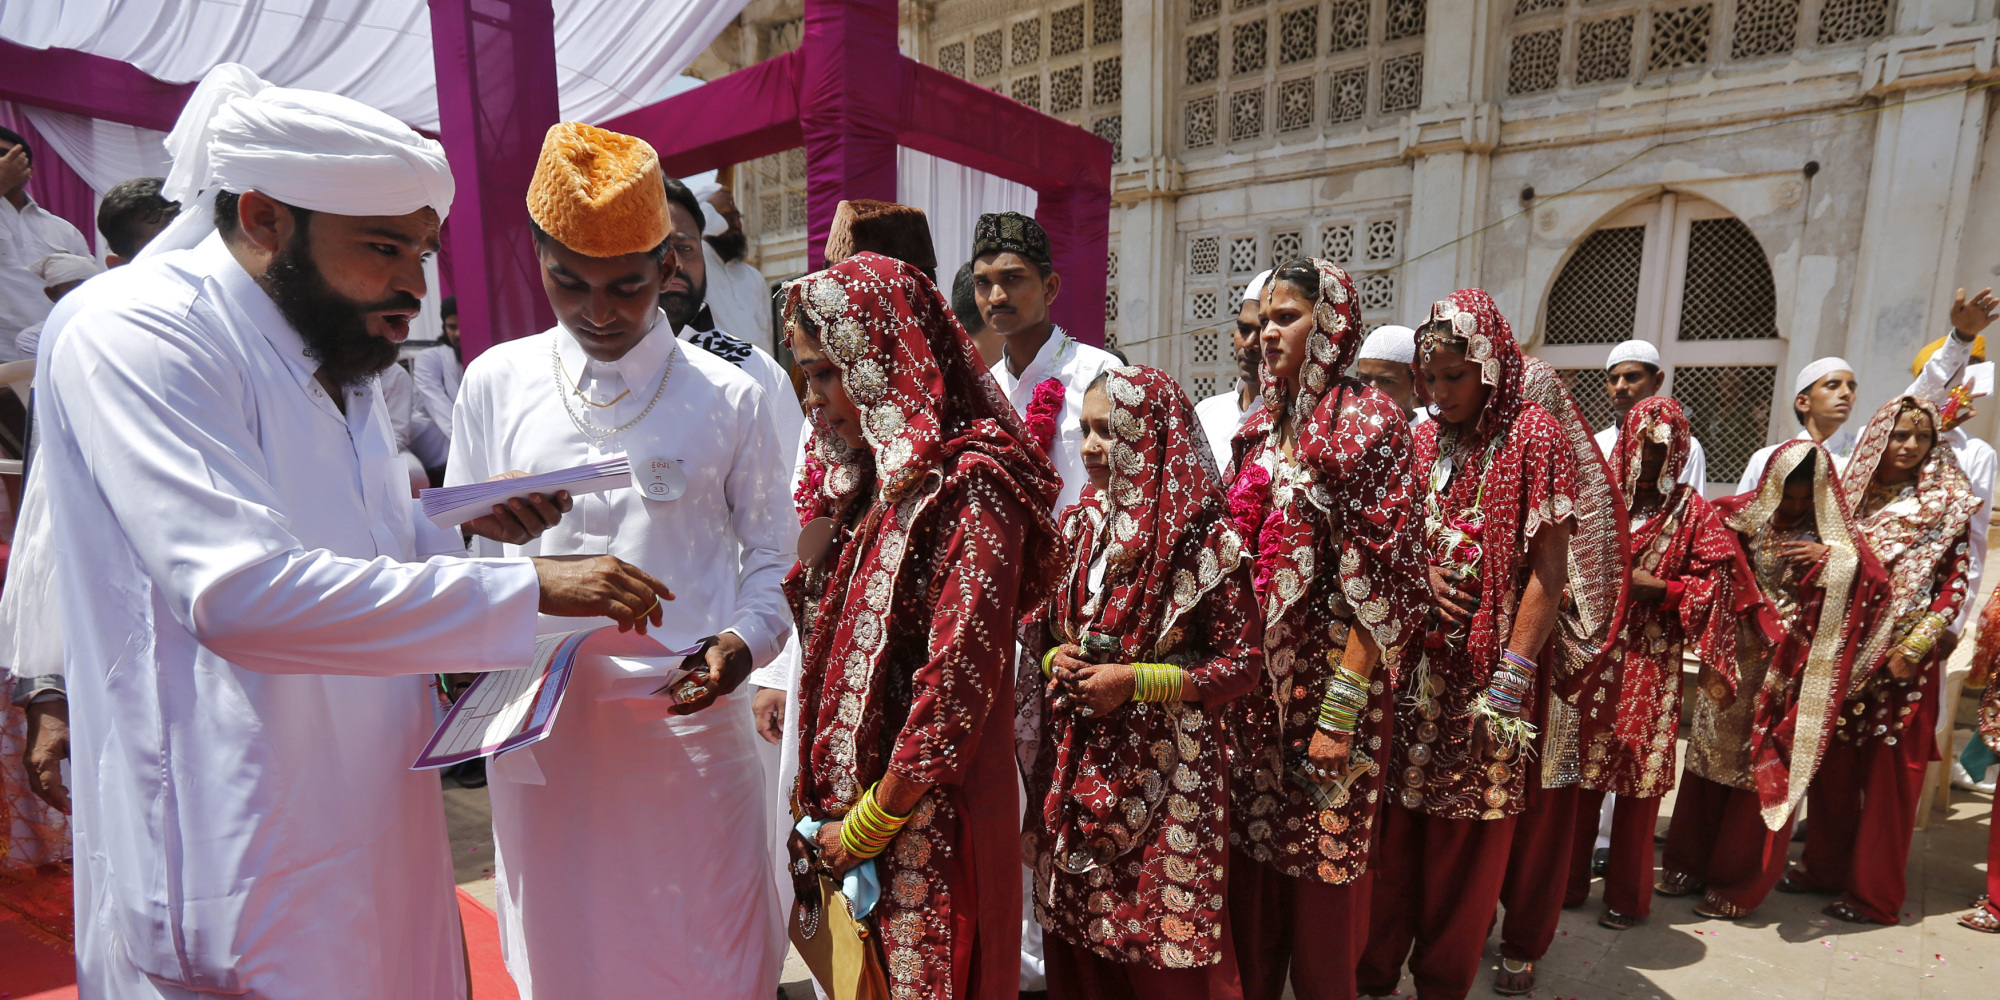 وزير هندي يأمر بتوزيع 10 آلاف عصا خشبية على نساء حديثات الزواج لضرب أزواجهن